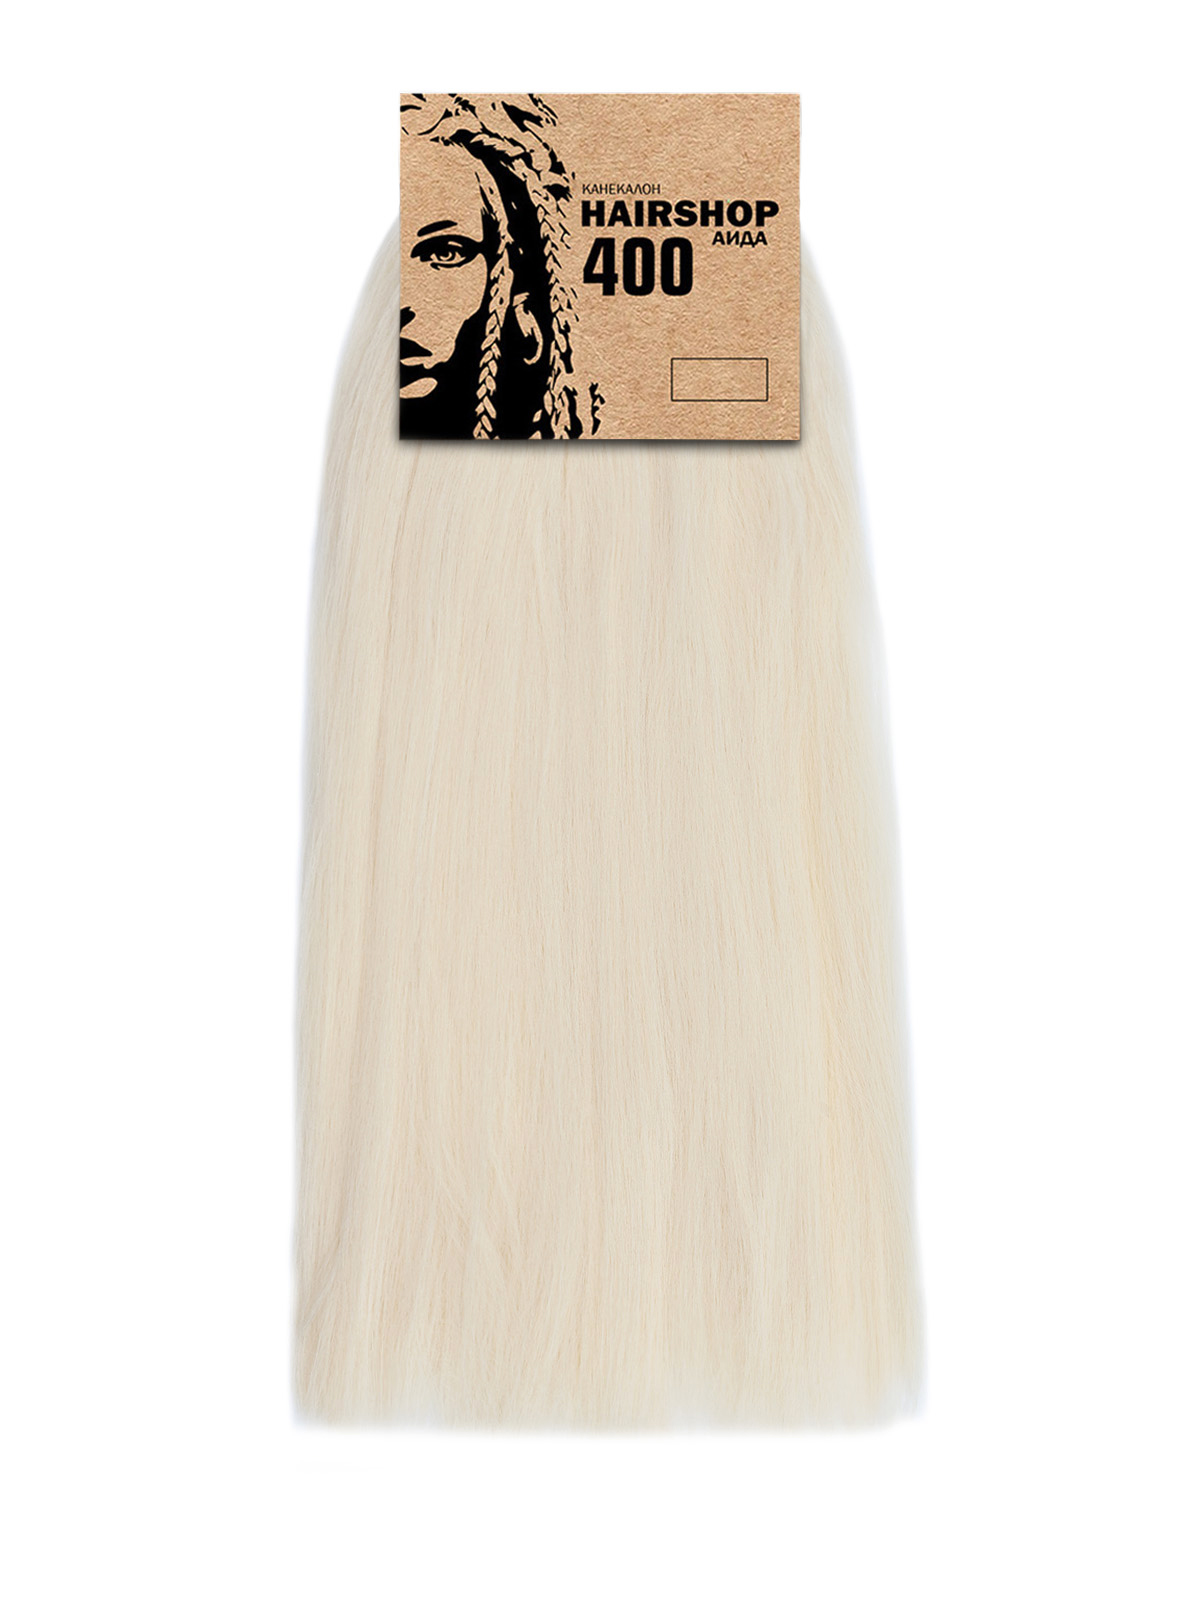 Канекалон Hairshop Аида 400г цвет 303 Светлый блонд канекалон hairshop аида 144 горчичный 400г